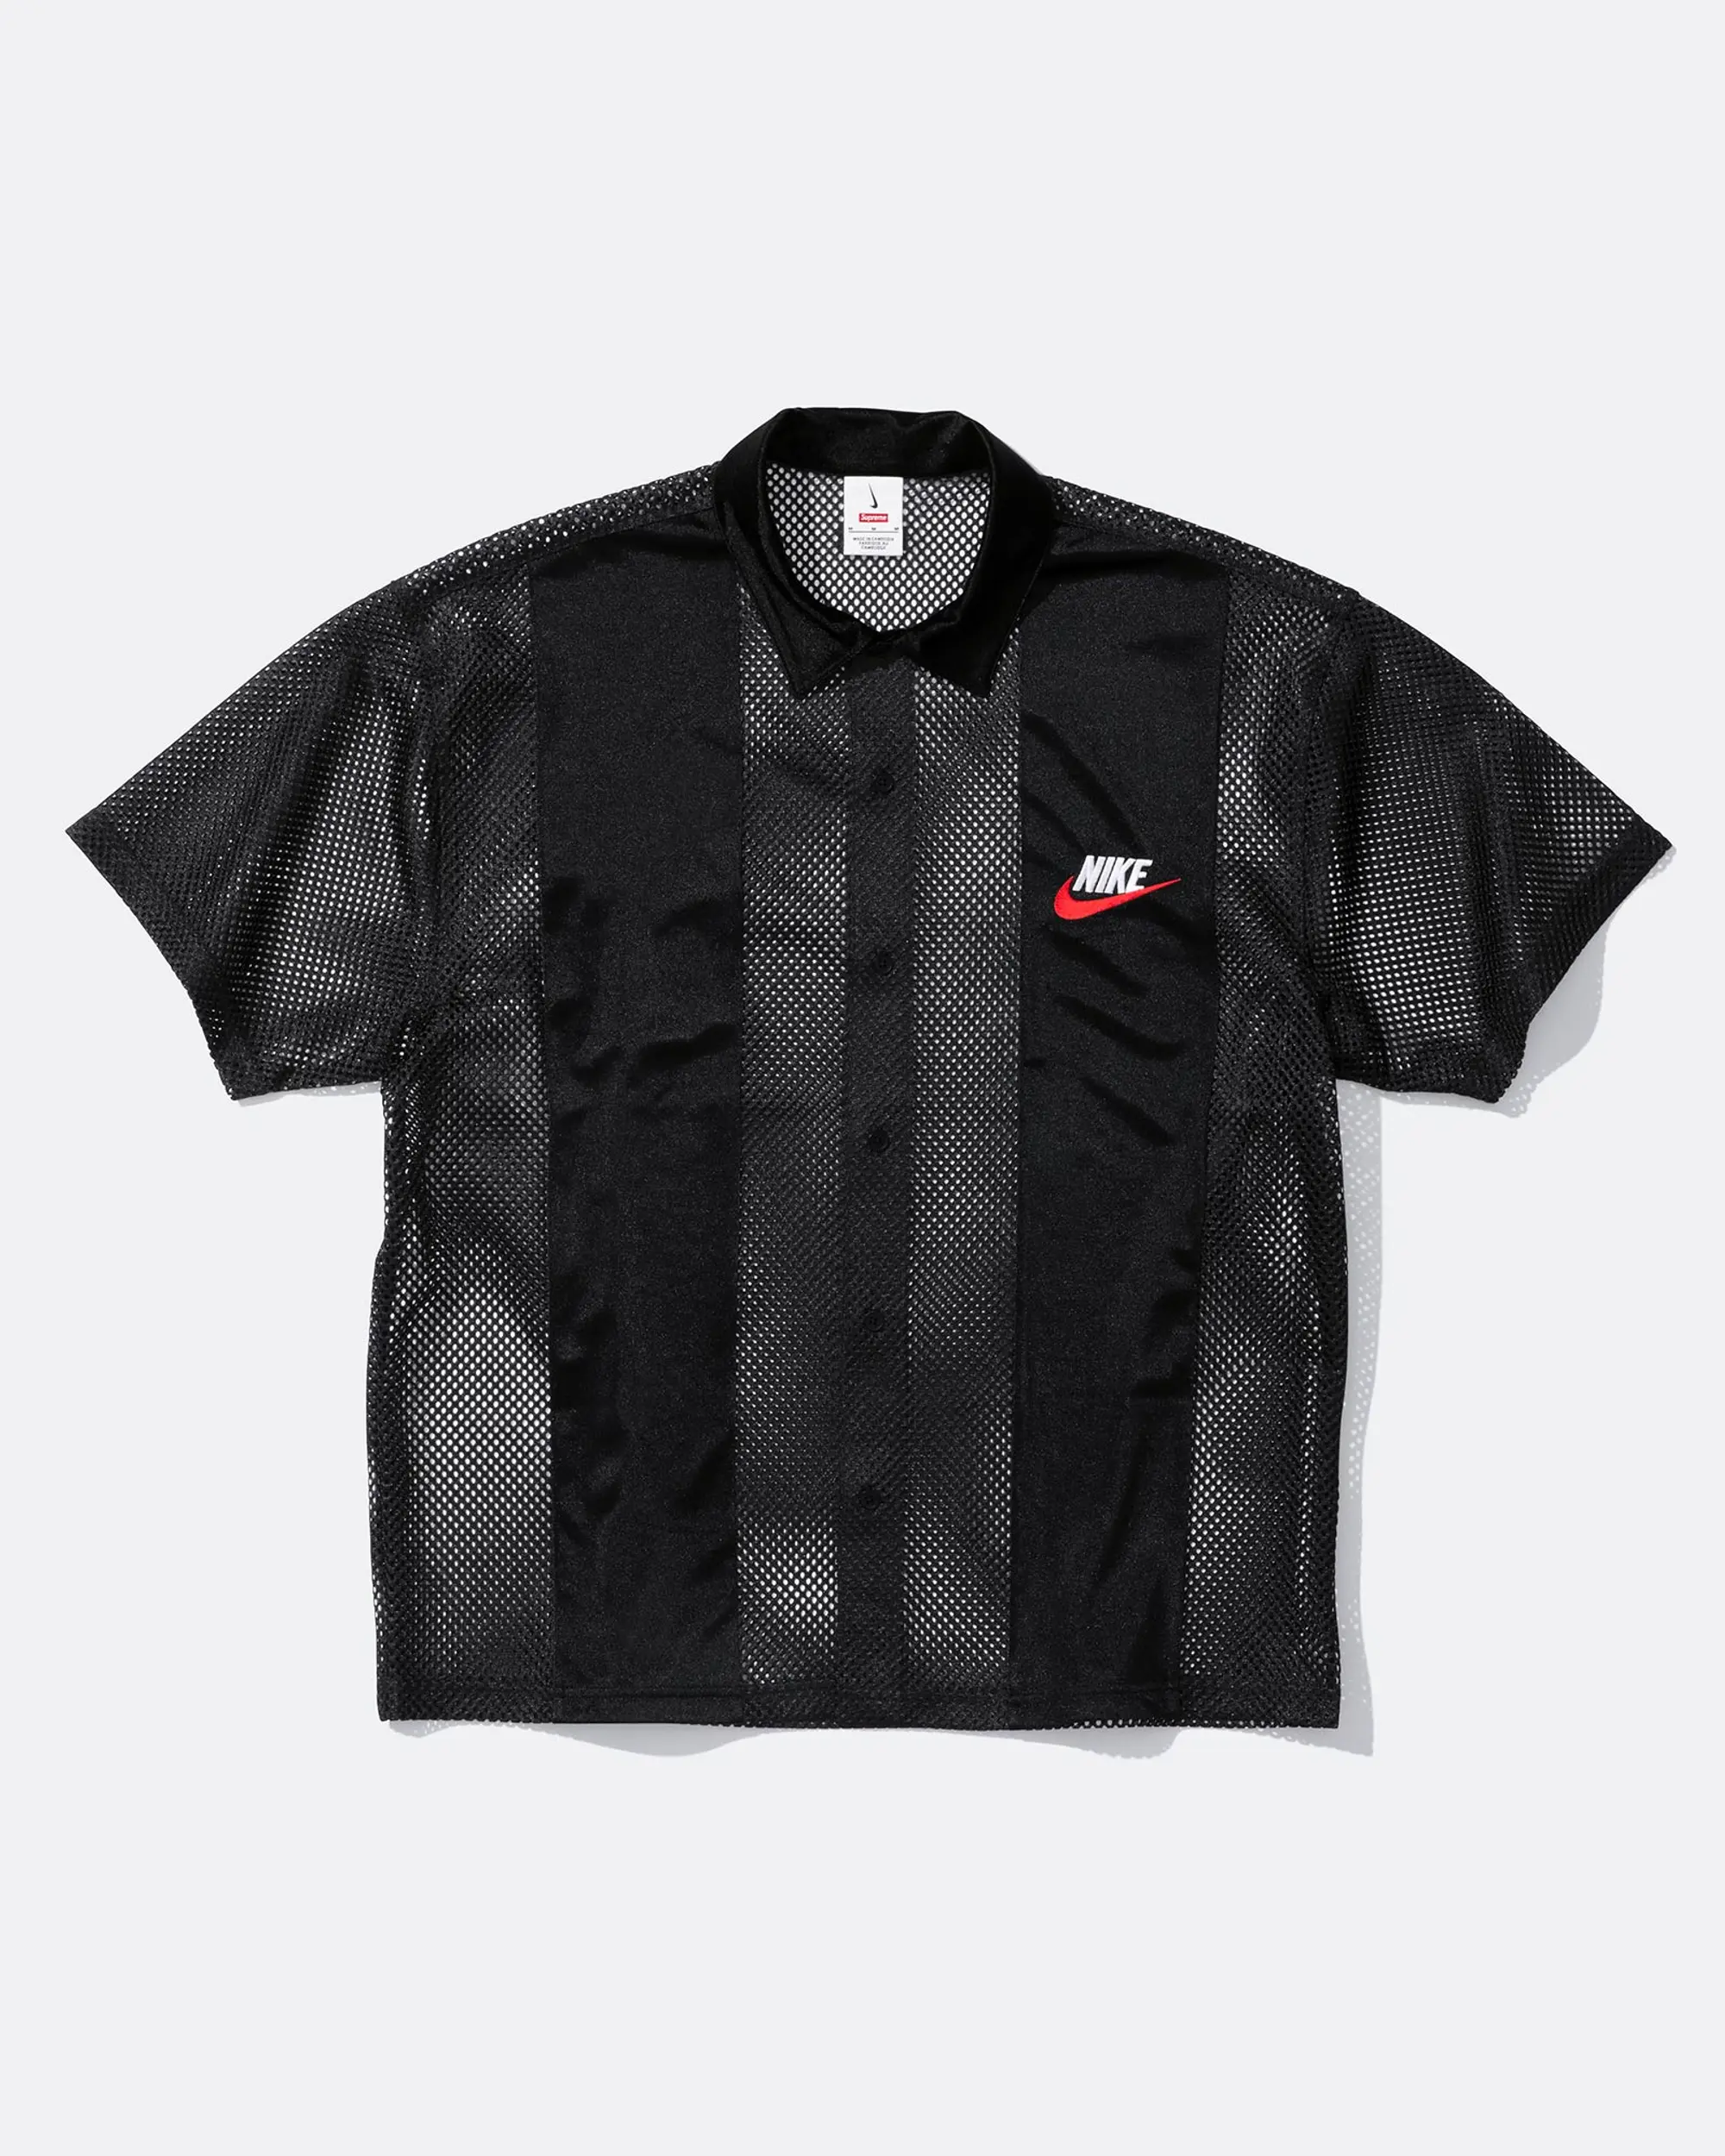 Supreme Supreme®/Nike® Mesh S/S Shirt